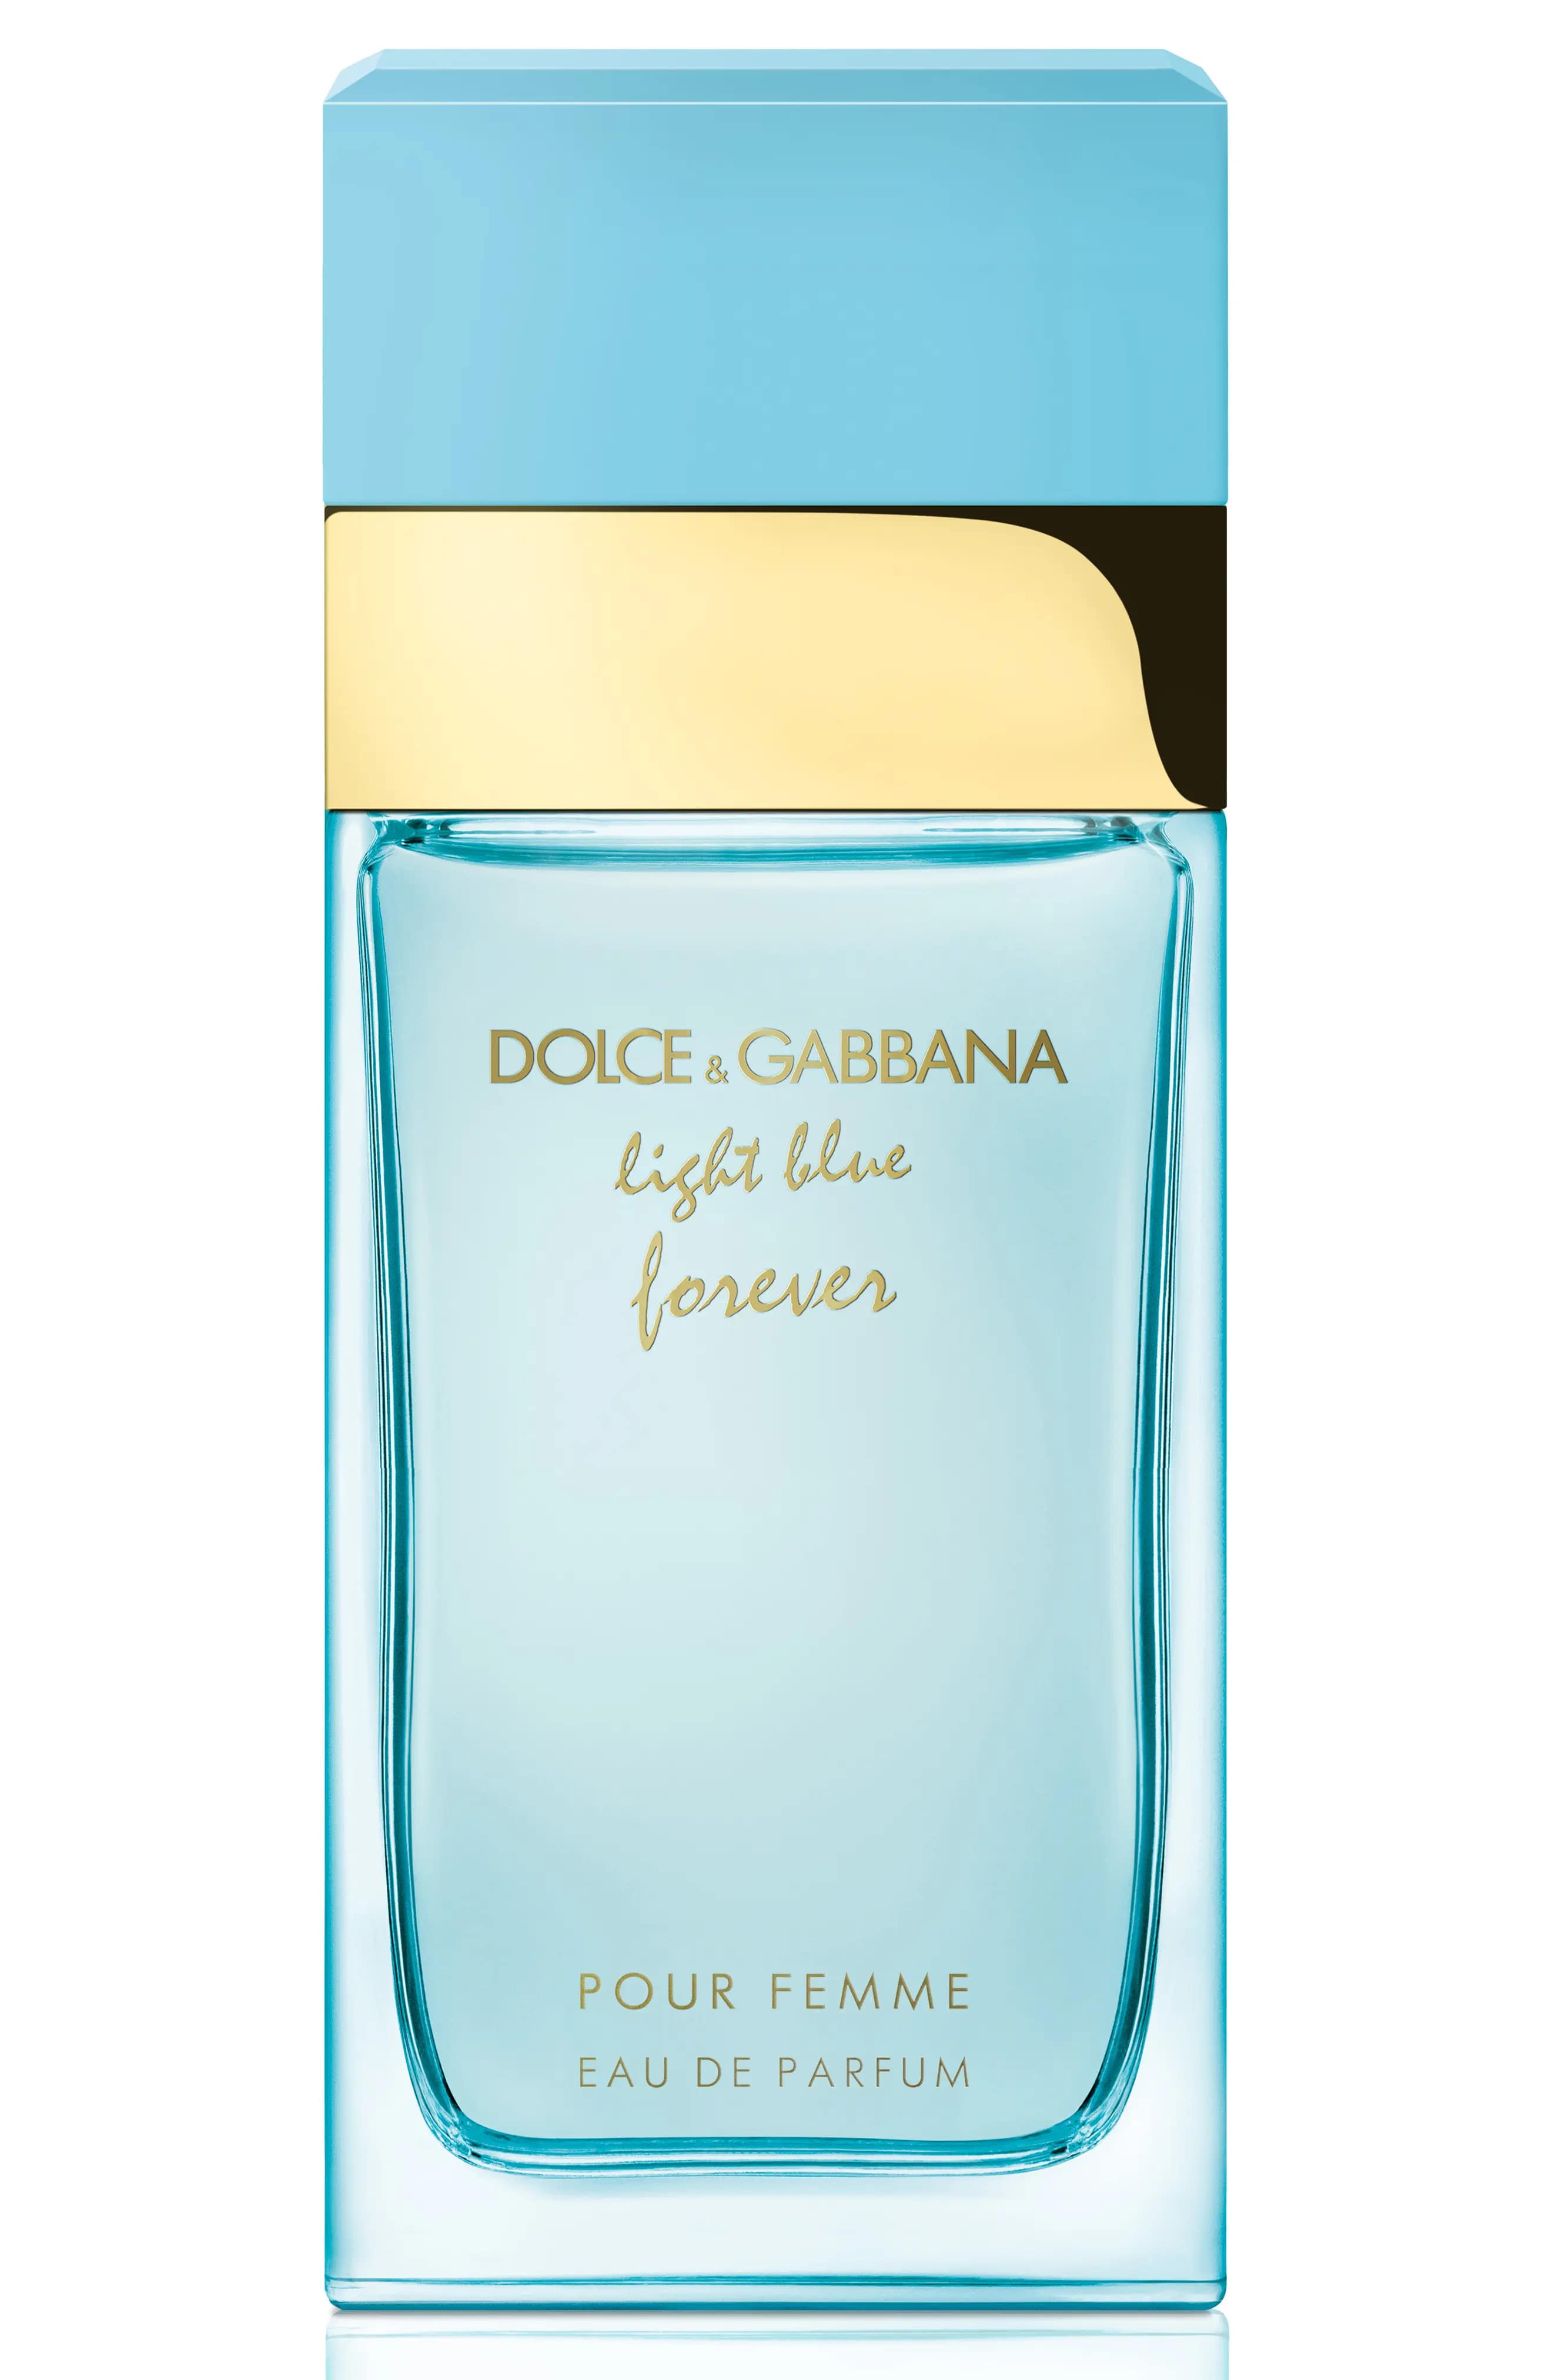 Light Blue Forever Pour Femme EDP Perfume for Women by Dolce & Gabbana